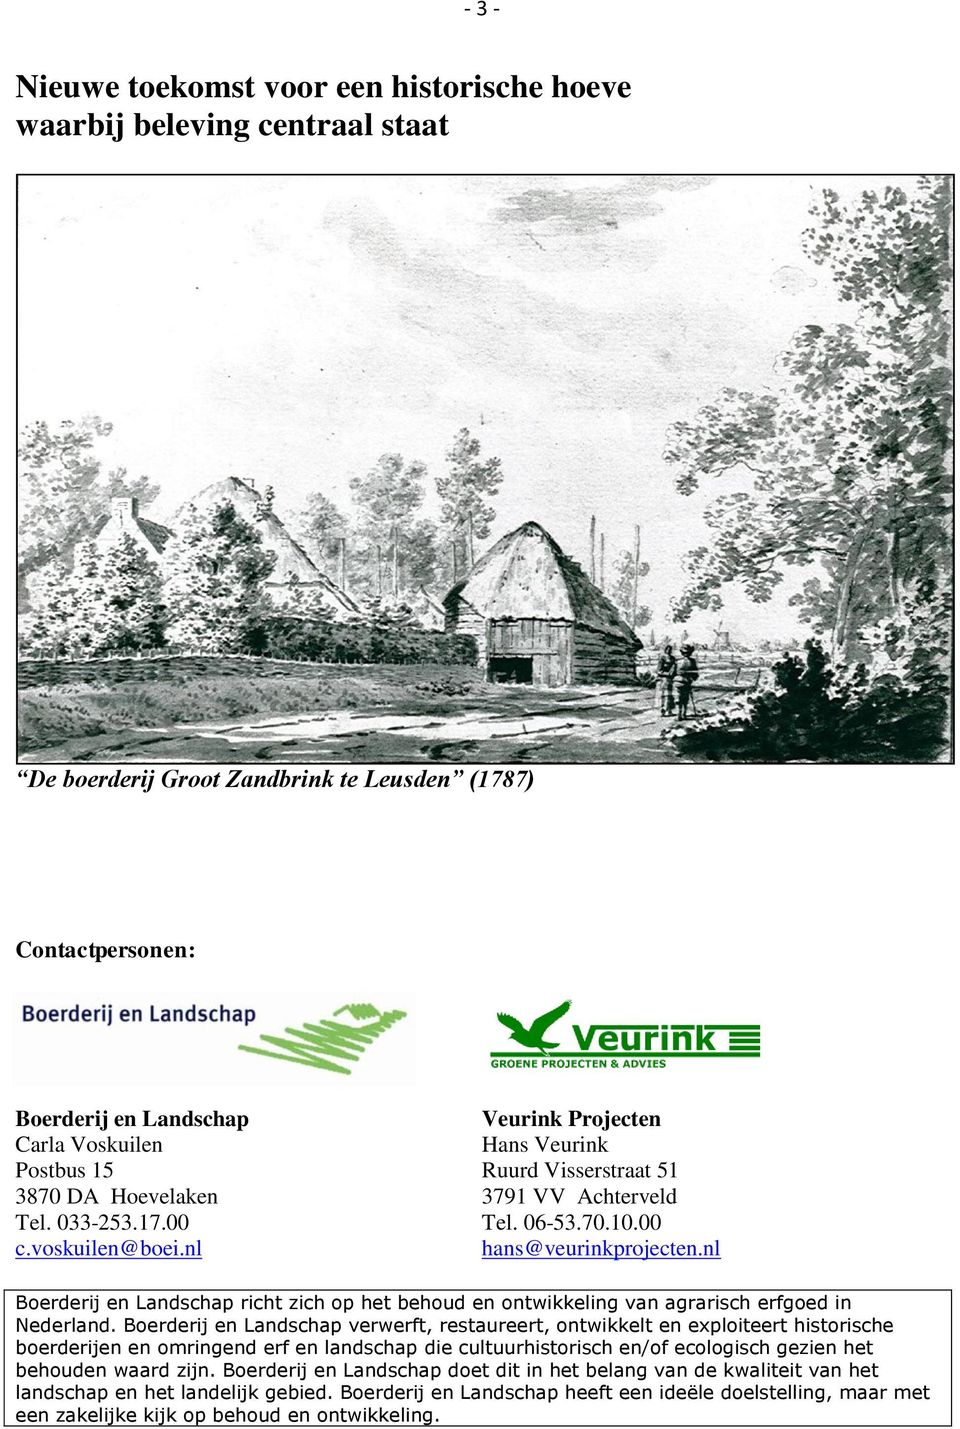 nl Boerderij en Landschap richt zich op het behoud en ontwikkeling van agrarisch erfgoed in Nederland.